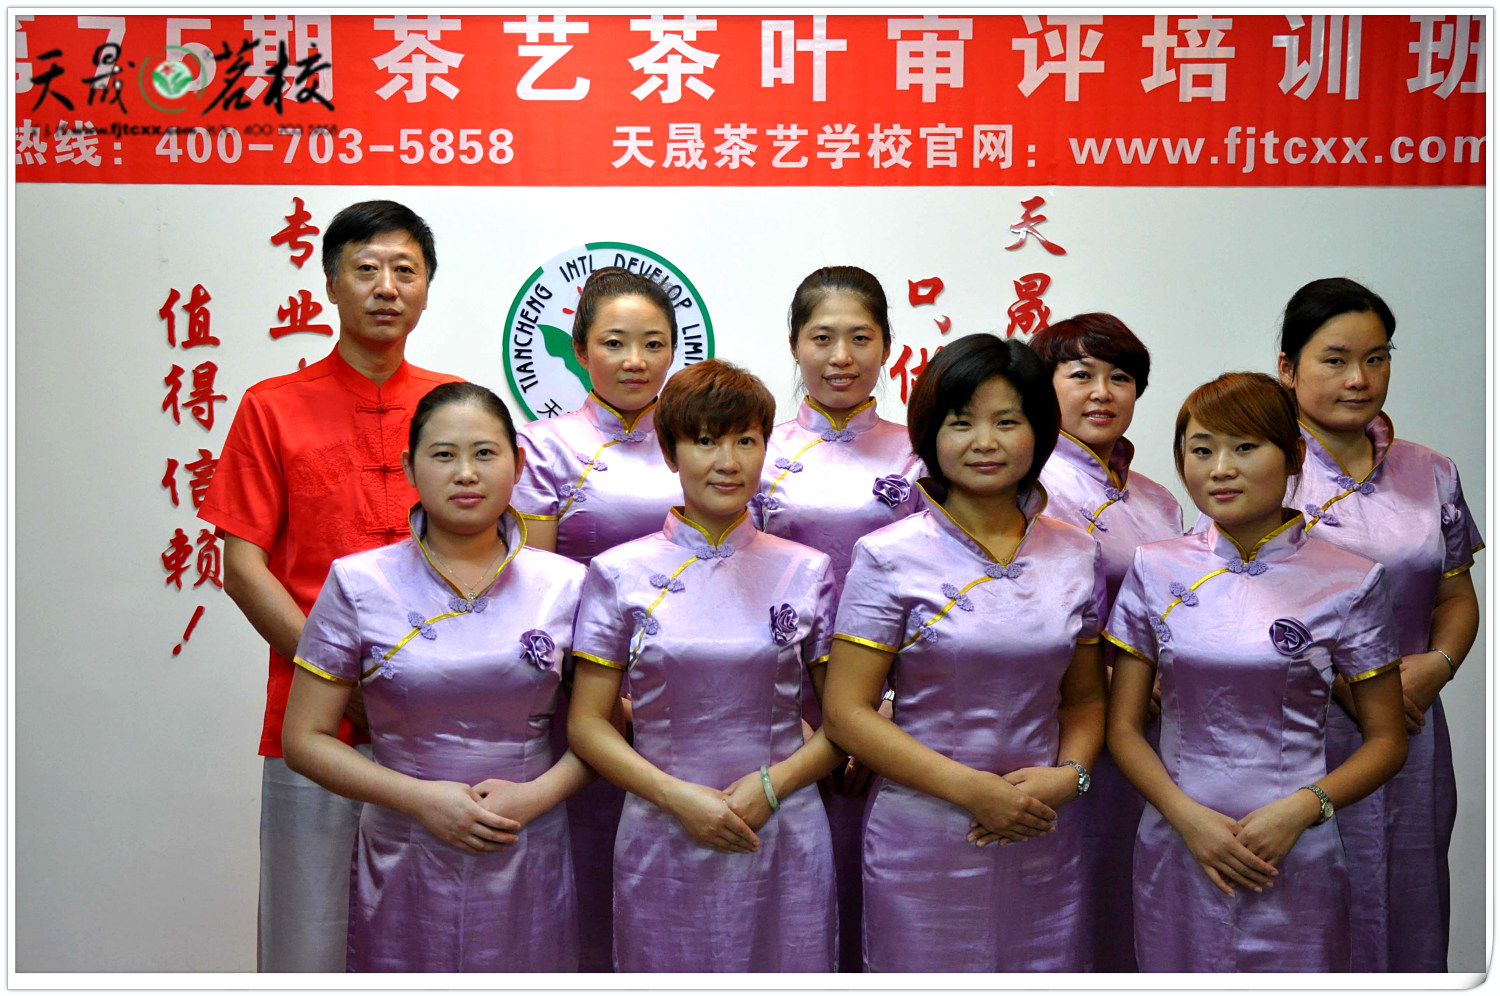 第75期天晟茶艺培训学校中国茶学系统培训班全体学员合照